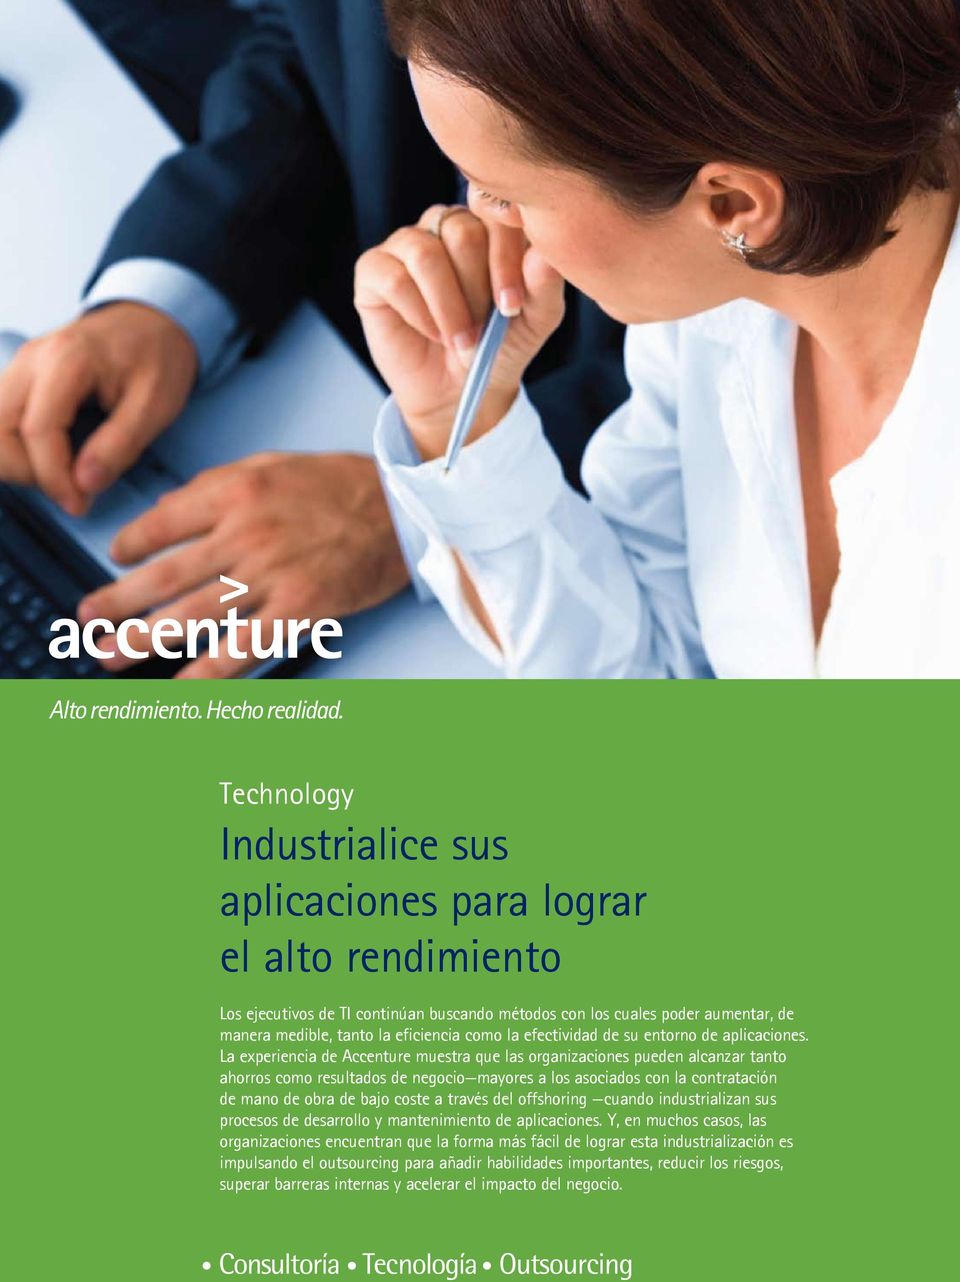 La experiencia de Accenture muestra que las organizaciones pueden alcanzar tanto ahorros como resultados de negocio mayores a los asociados con la contratación de mano de obra de bajo coste a